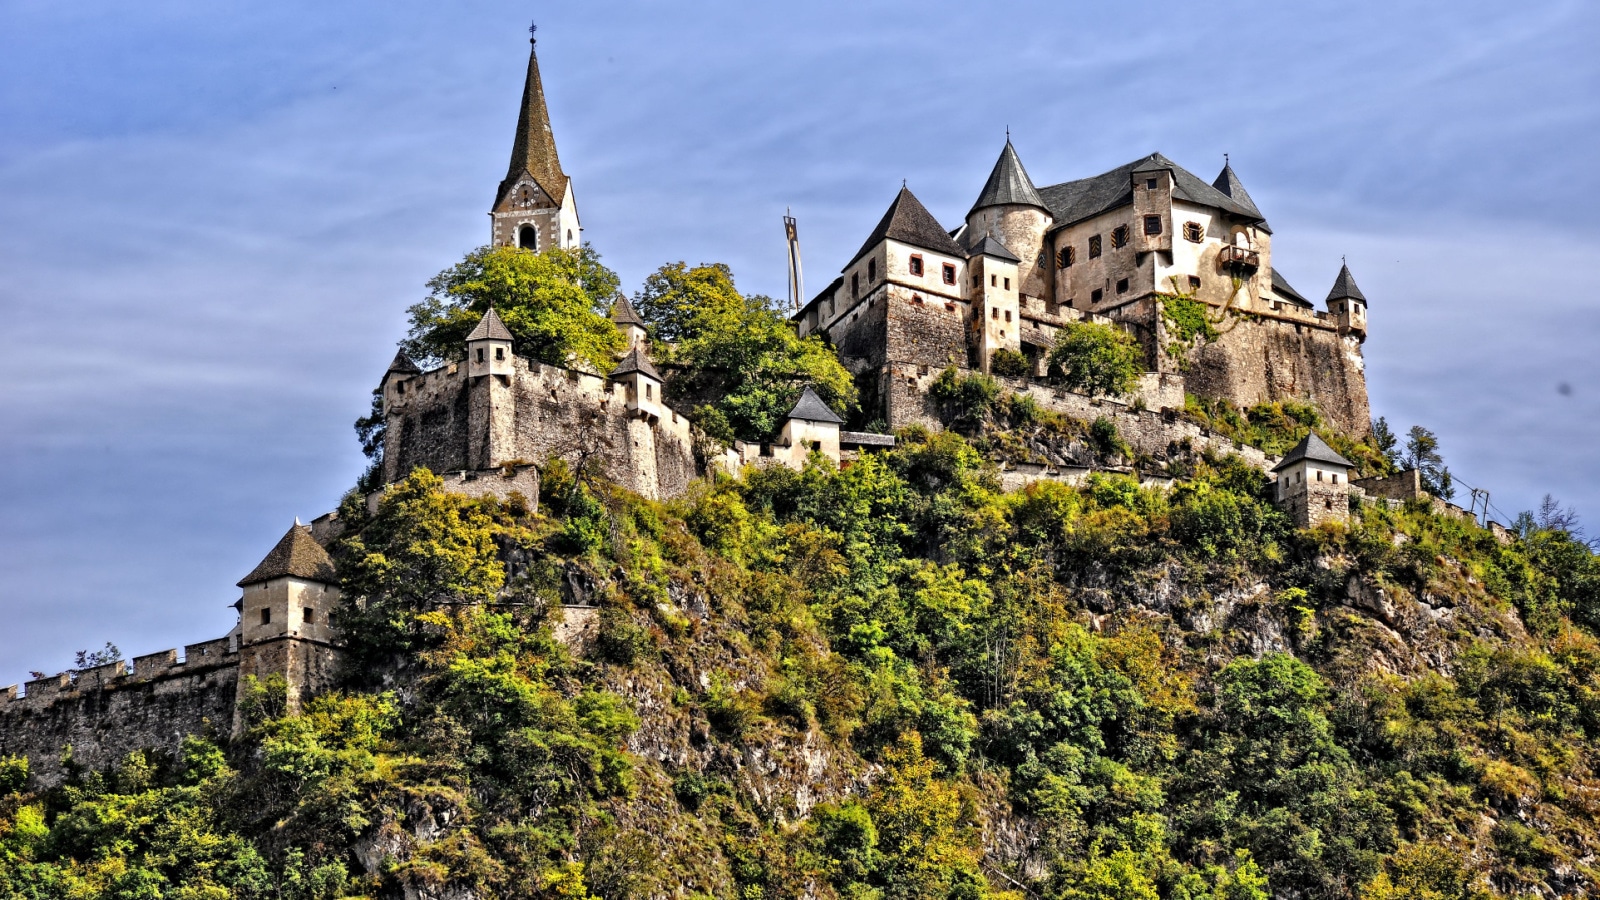 Hochosterwitz Castle. Austria.